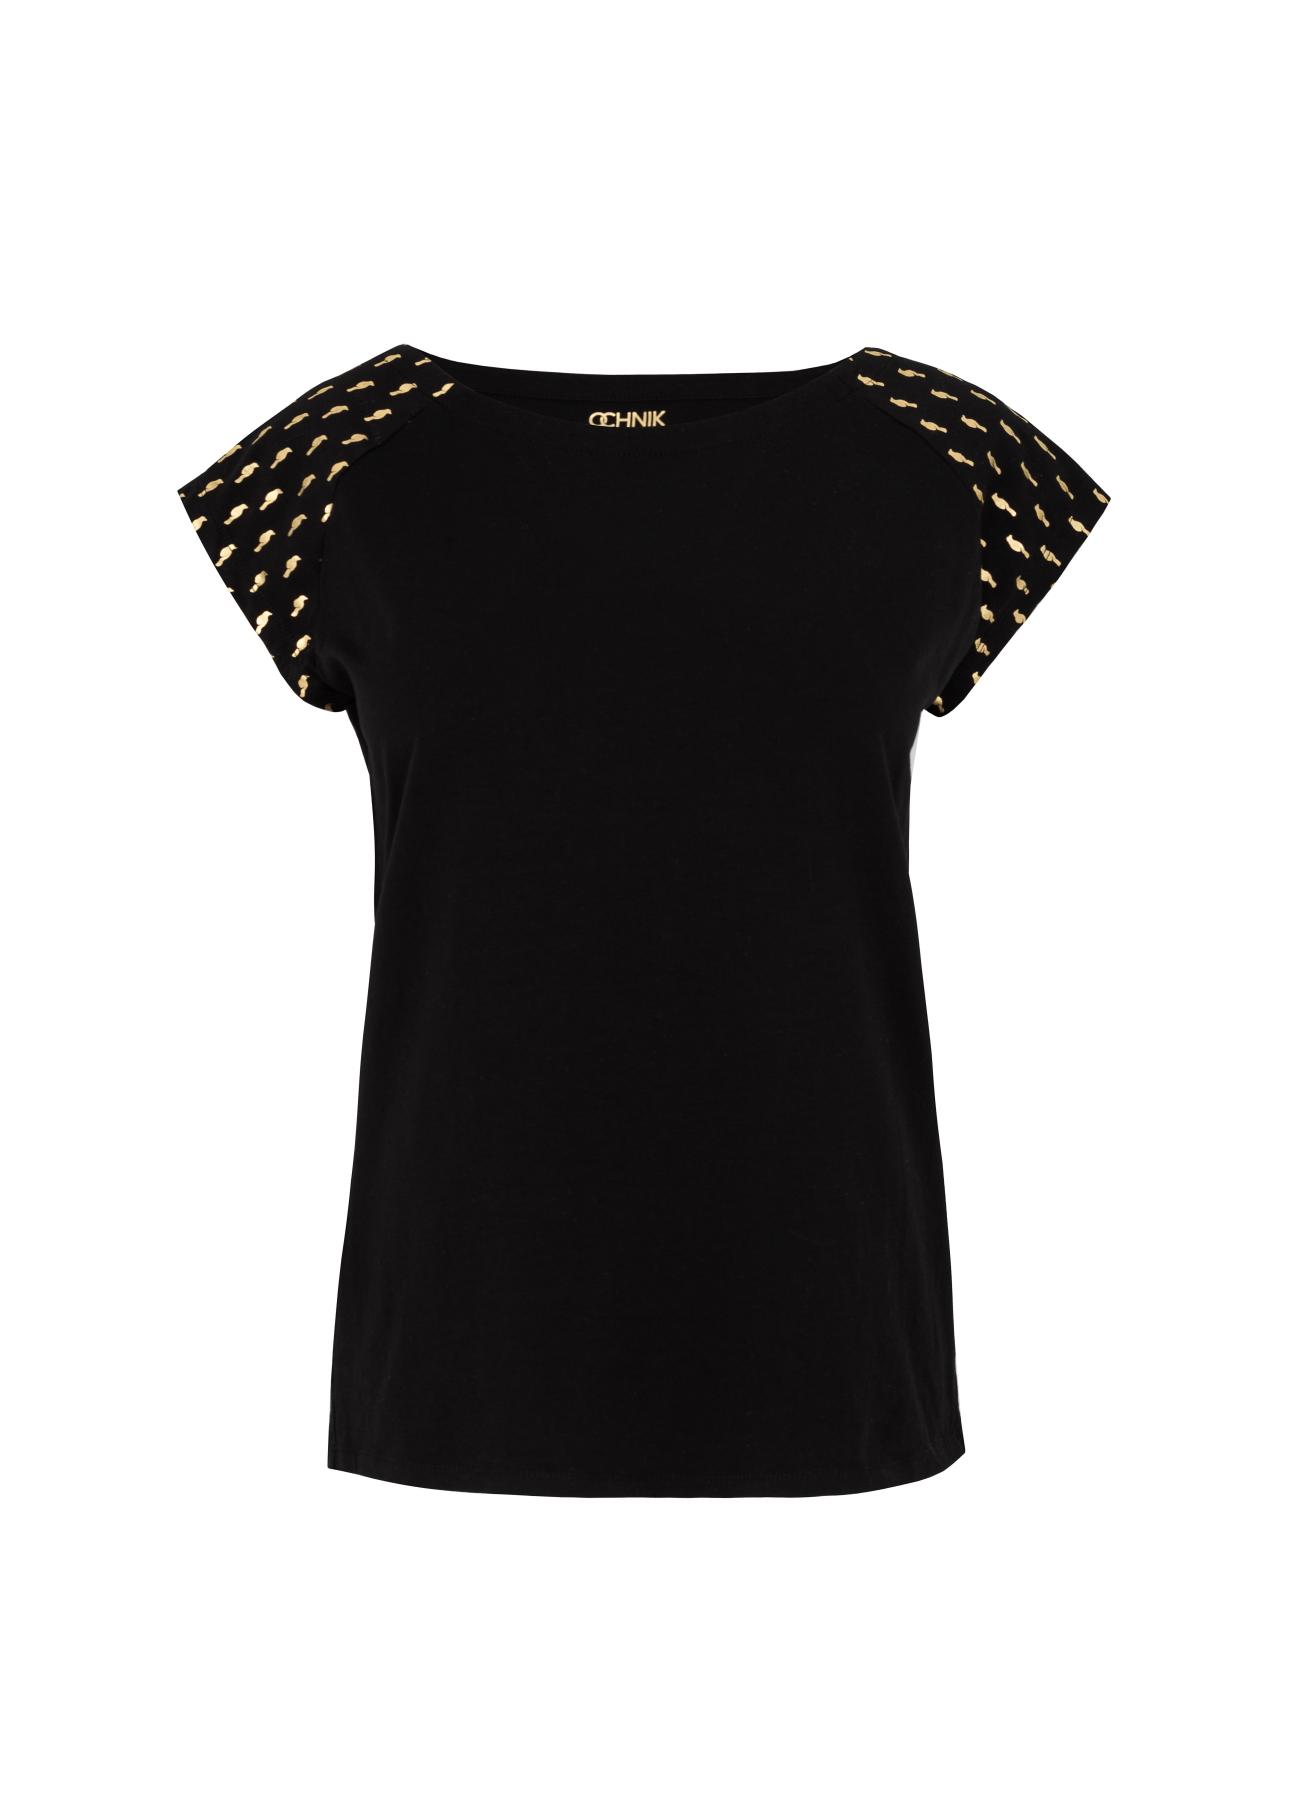 Czarny T-shirt ze złotym nadrukiem damski TSHDT-0060-99(W21)